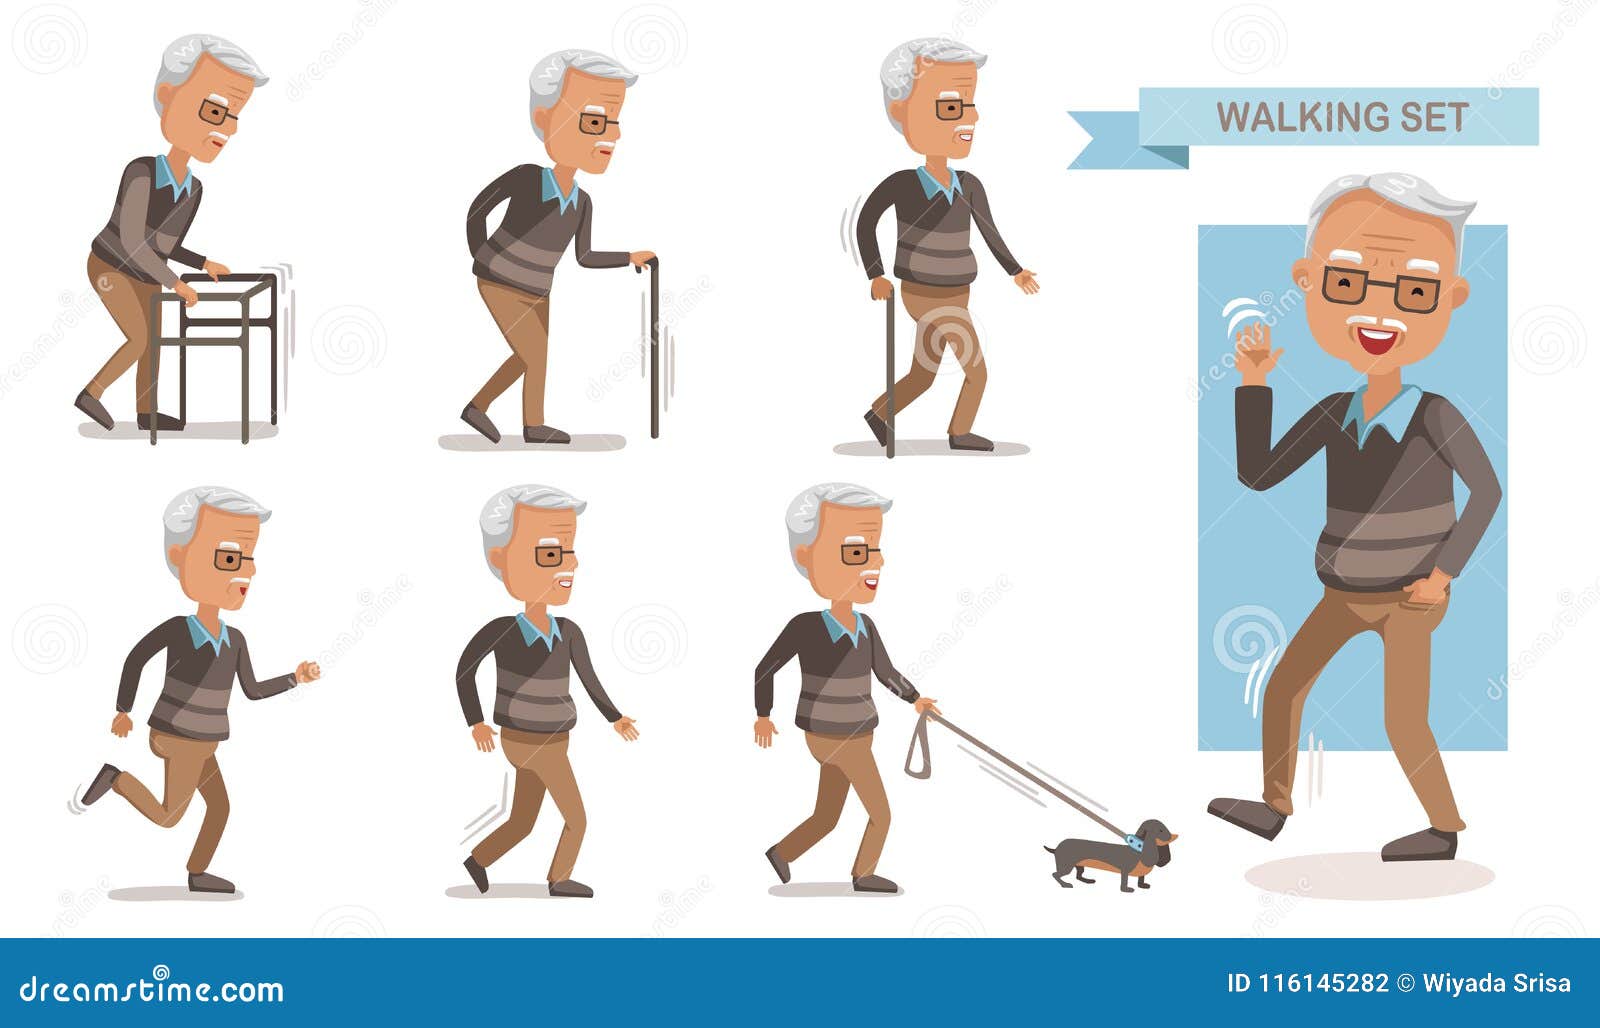 hersenen Spit Knorretje Old Man Walking Portrait Stock Illustrations – 521 Old Man Walking Portrait  Stock Illustrations, Vectors & Clipart - Dreamstime